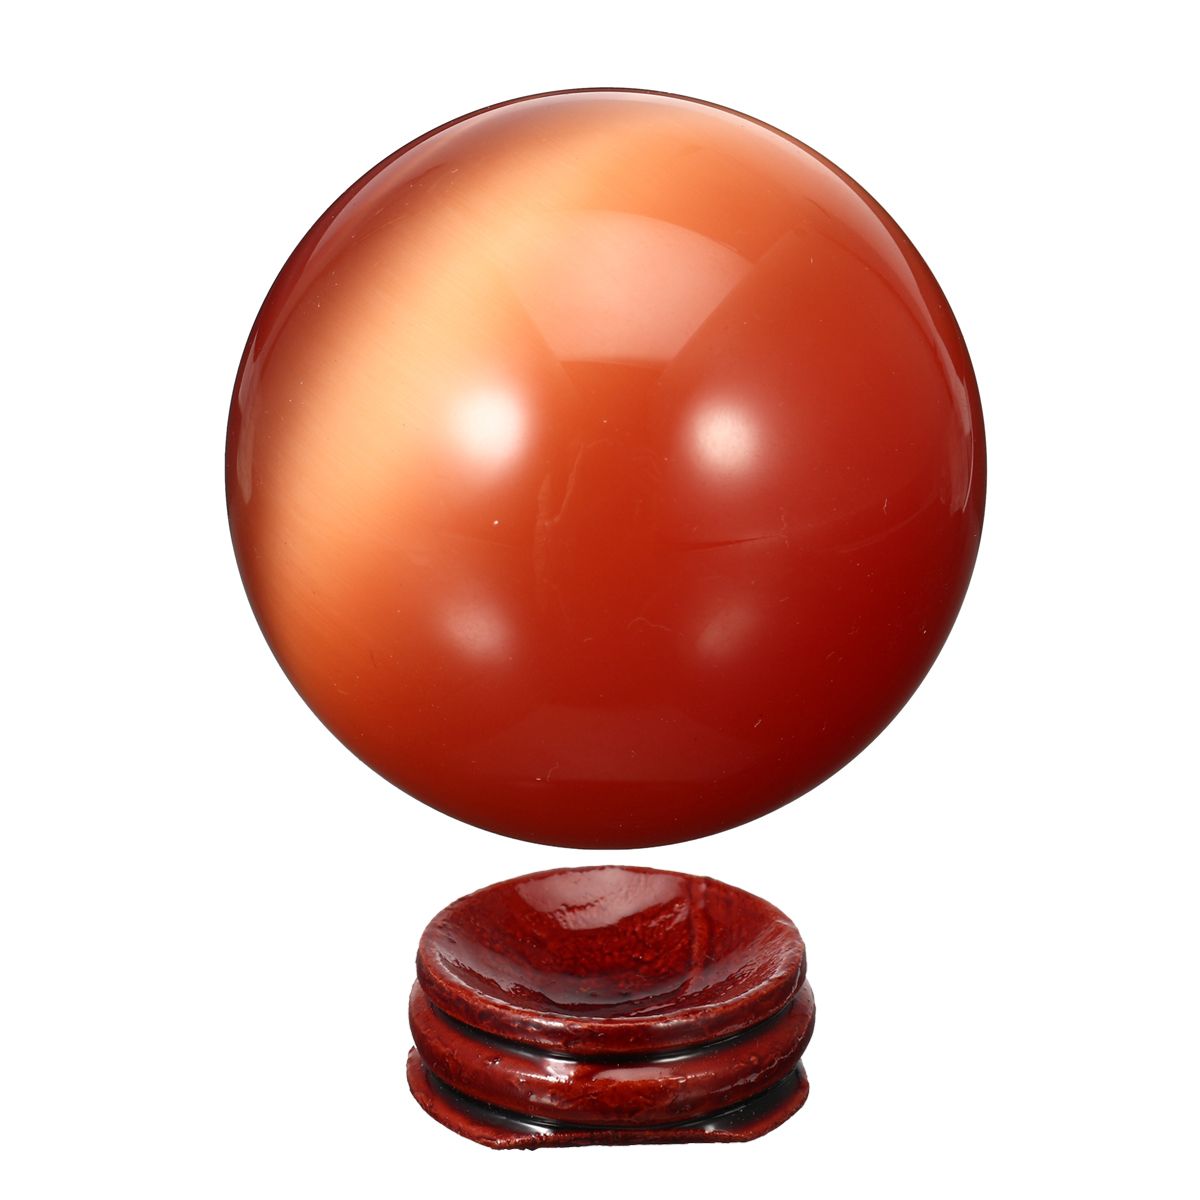 Cat-Eye-Crystals-Ball-Sphere-50-60mm-Asian-Quartz-Rock-Healing-Home-Decor--Stand-1537669